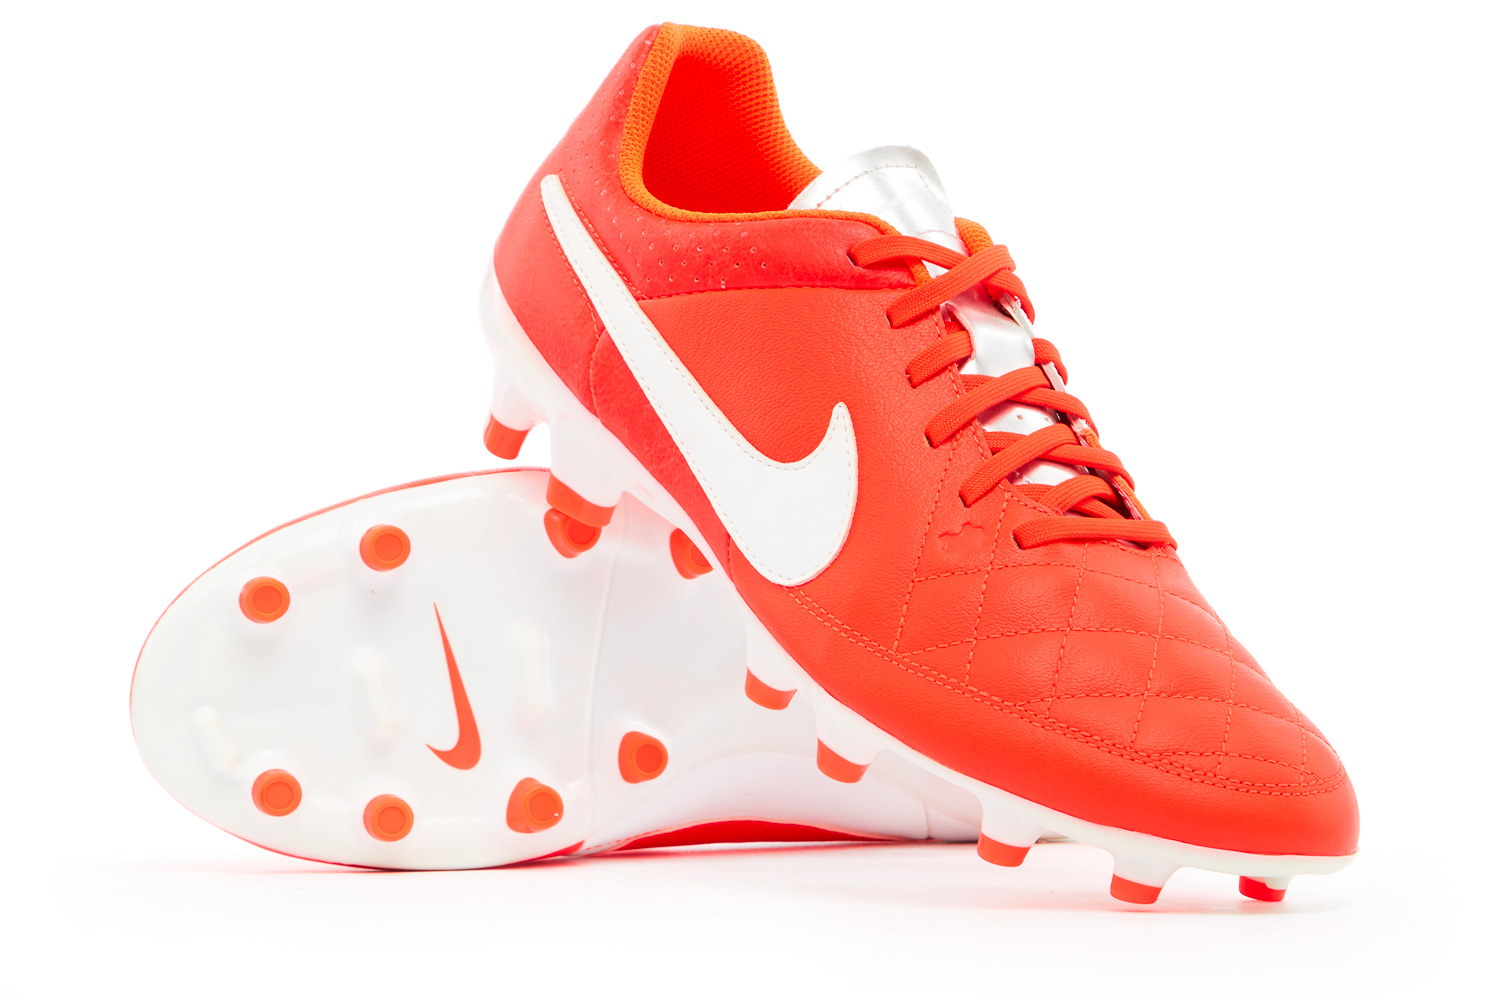 Exclusivo toque Tentáculo 2014 Nike Tiempo Genio Leather Football Boots *In Box* FG